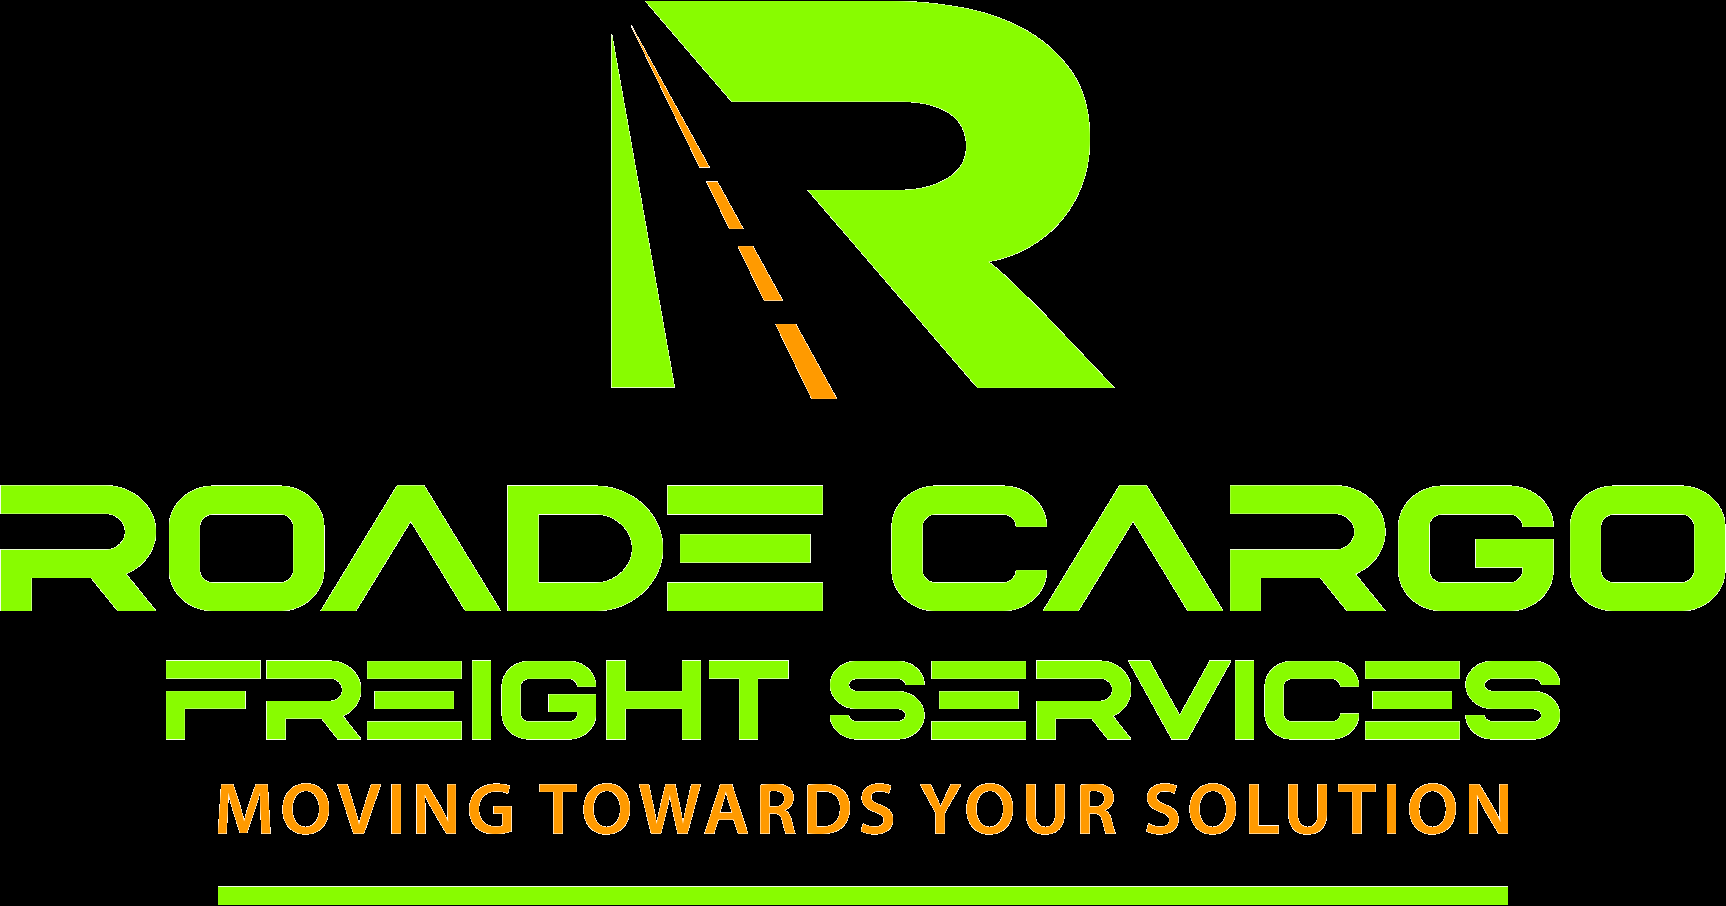 Roade Cargo Freight Services